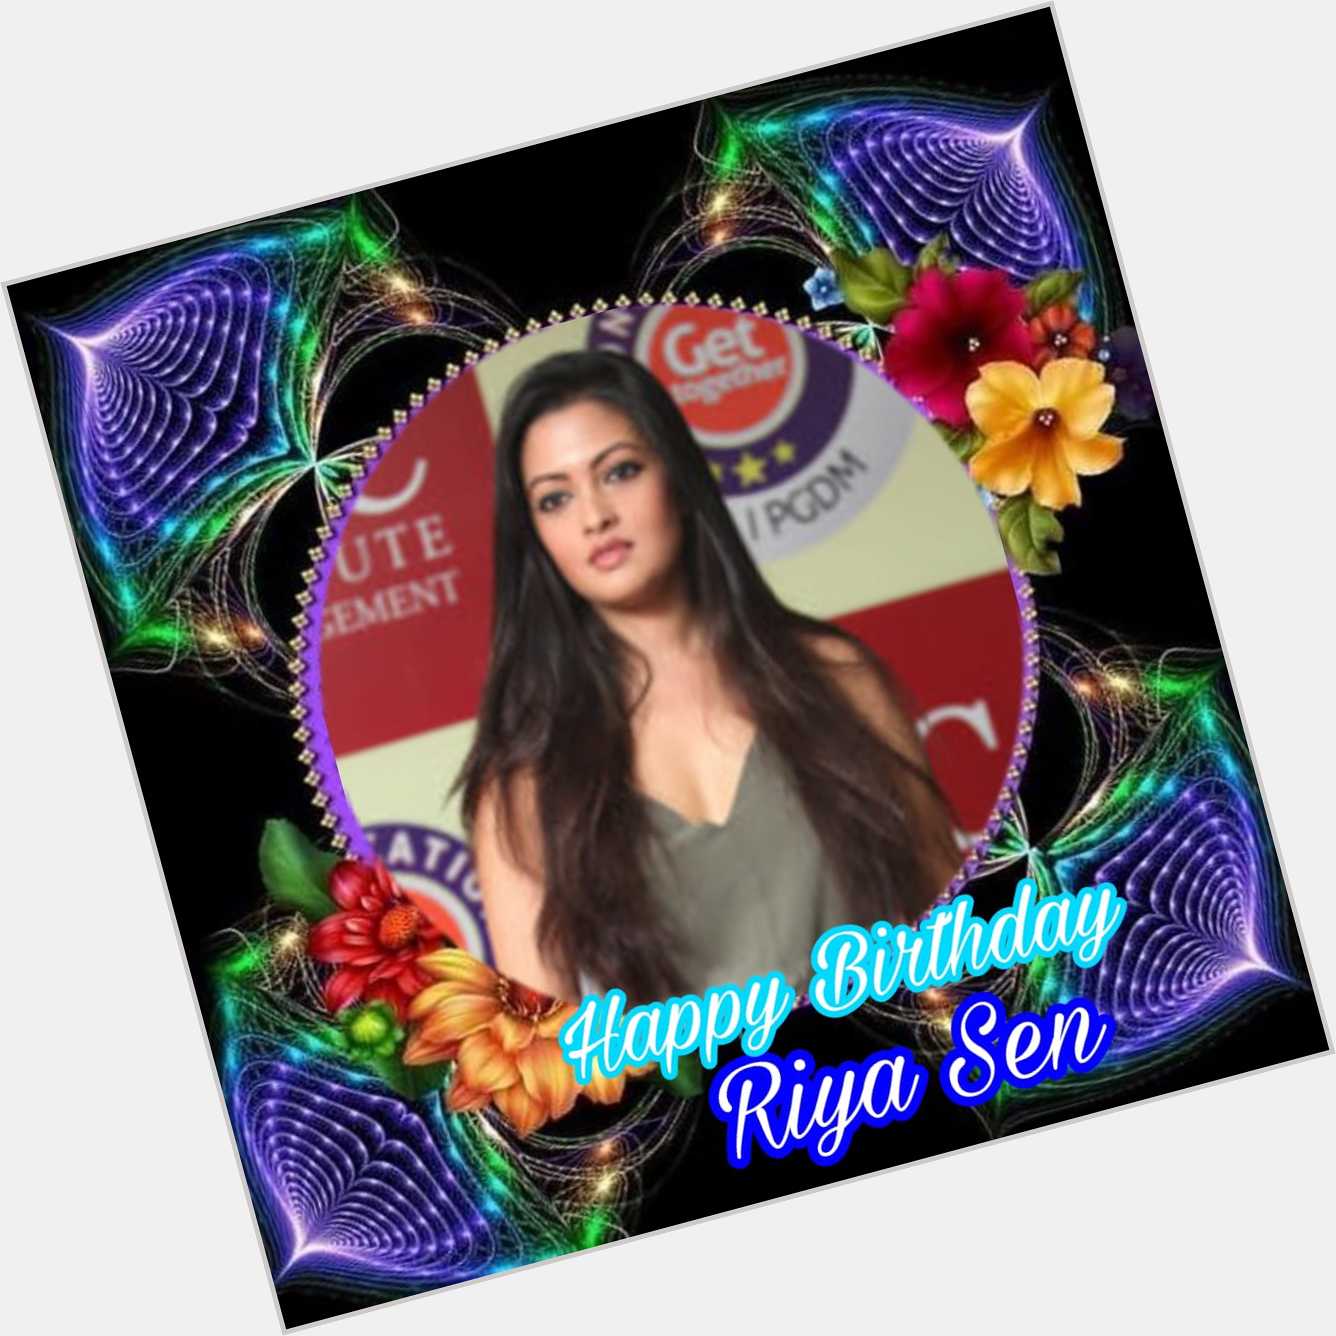 Happy Birthday Riya Sen   